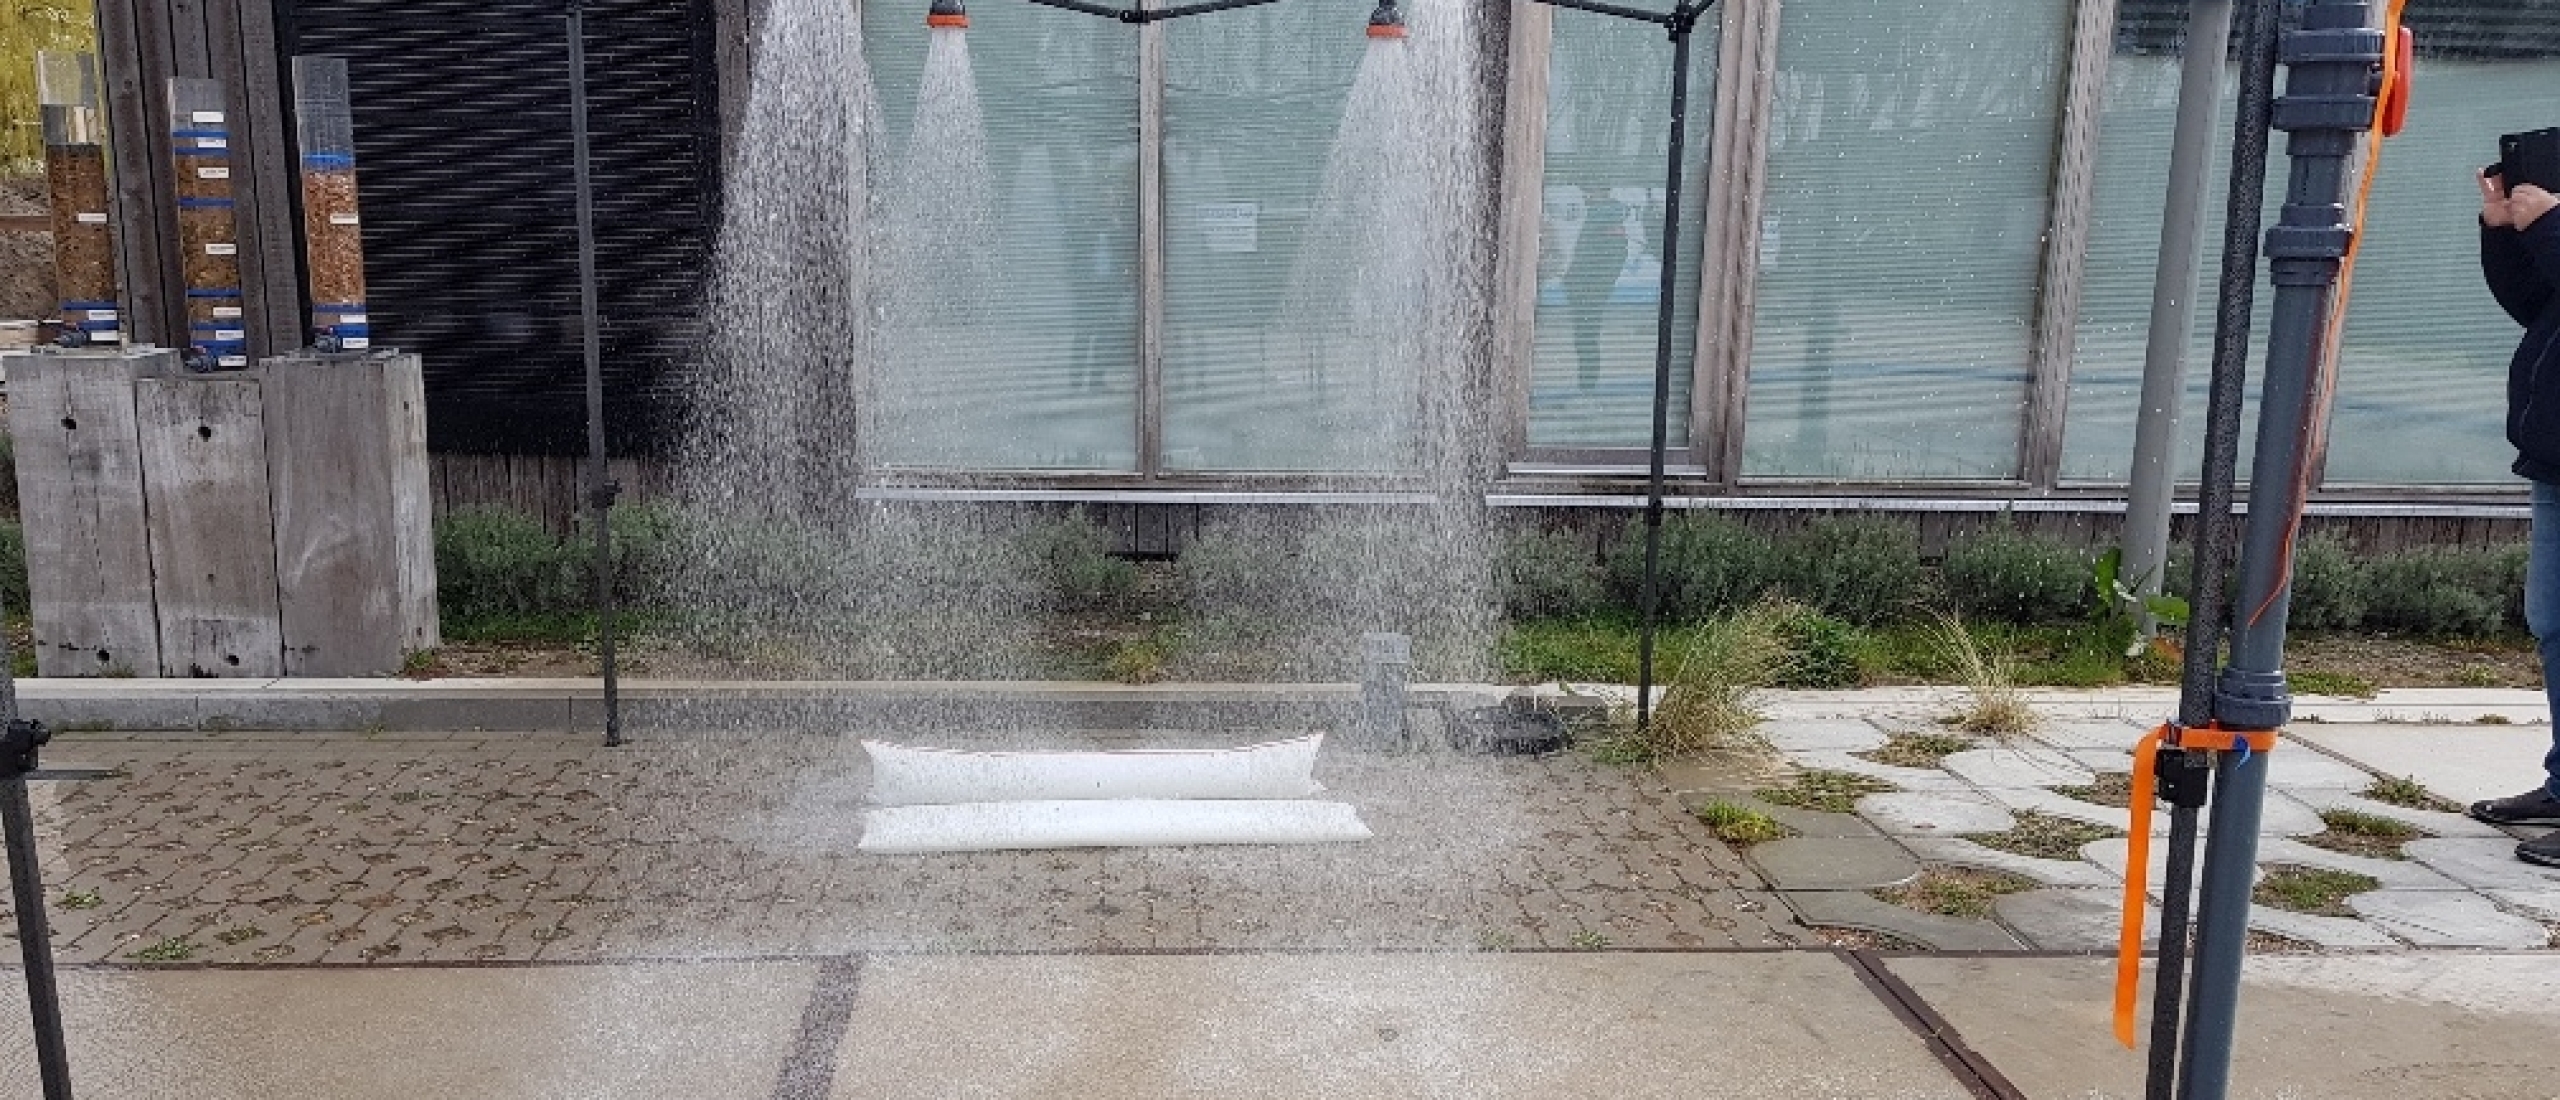 Slurpzakken binnen 3 minuten gevuld tijdens regenbui simulatie WaterStraat TU Delft